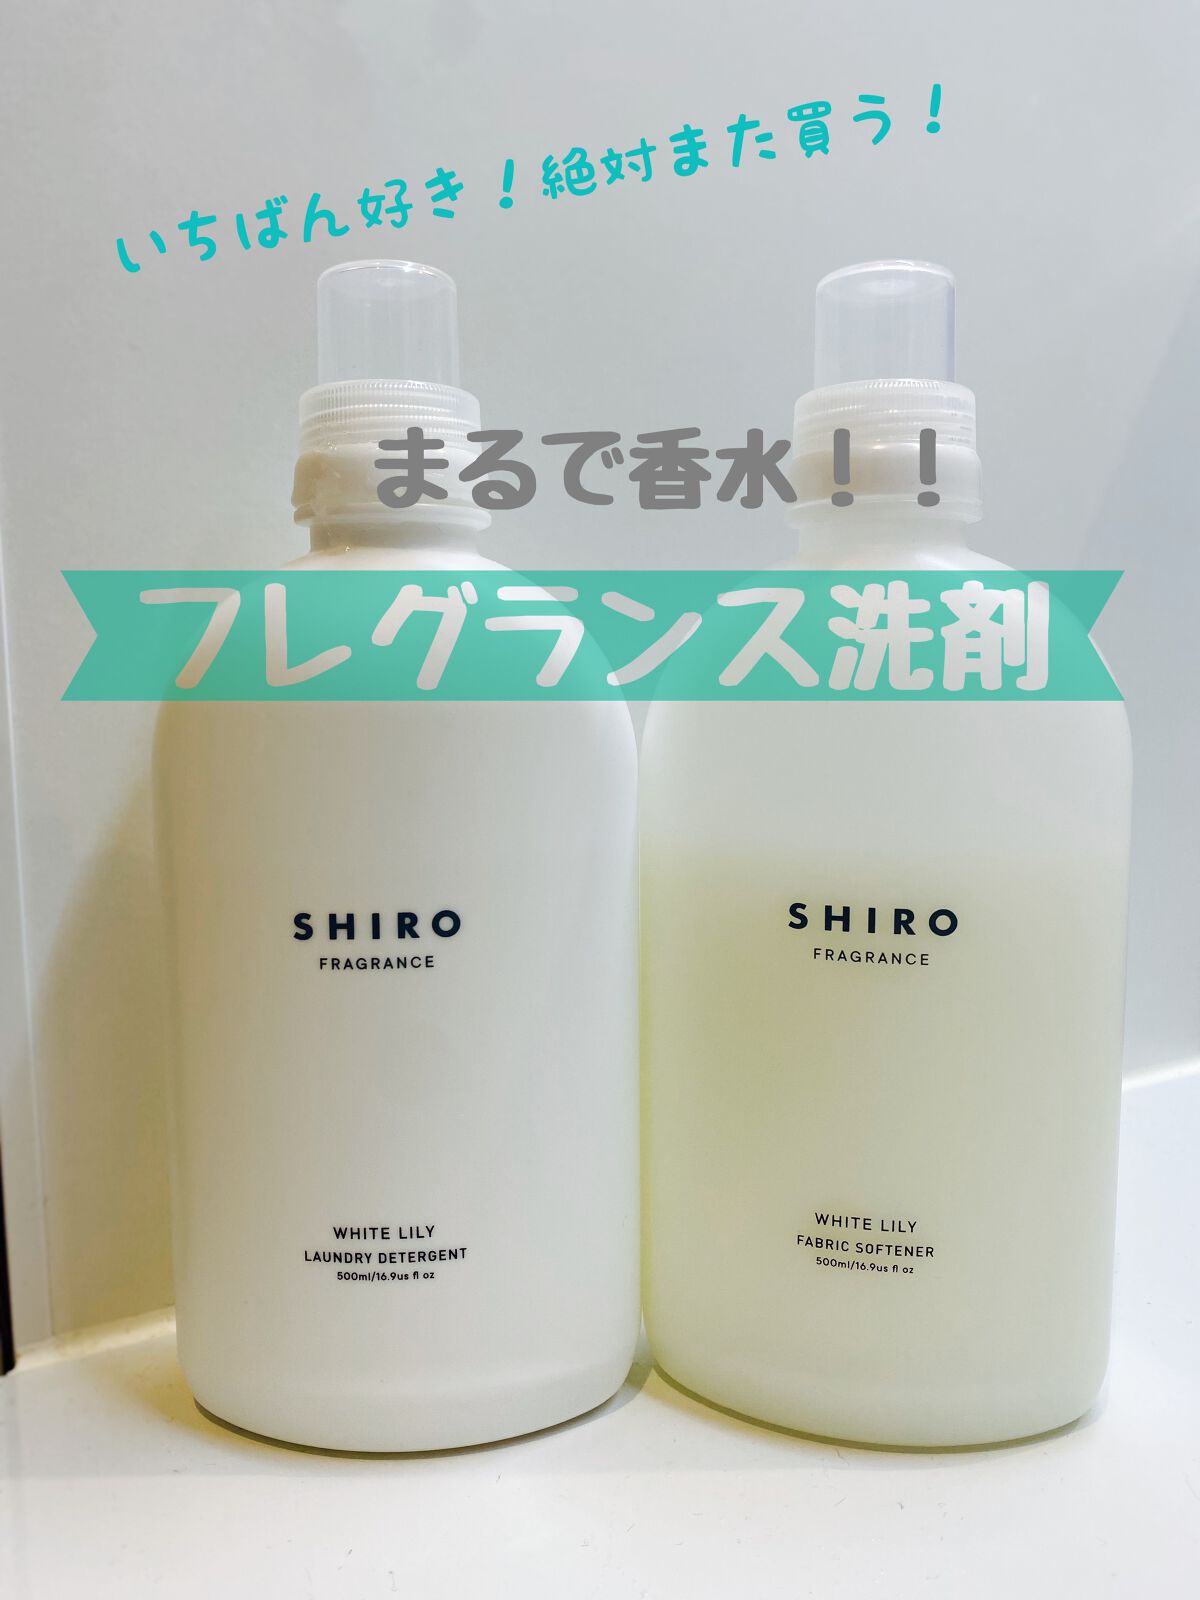 SHIROの柔軟剤 サボン ファブリックソフナー他、2商品を使った口コミ ...